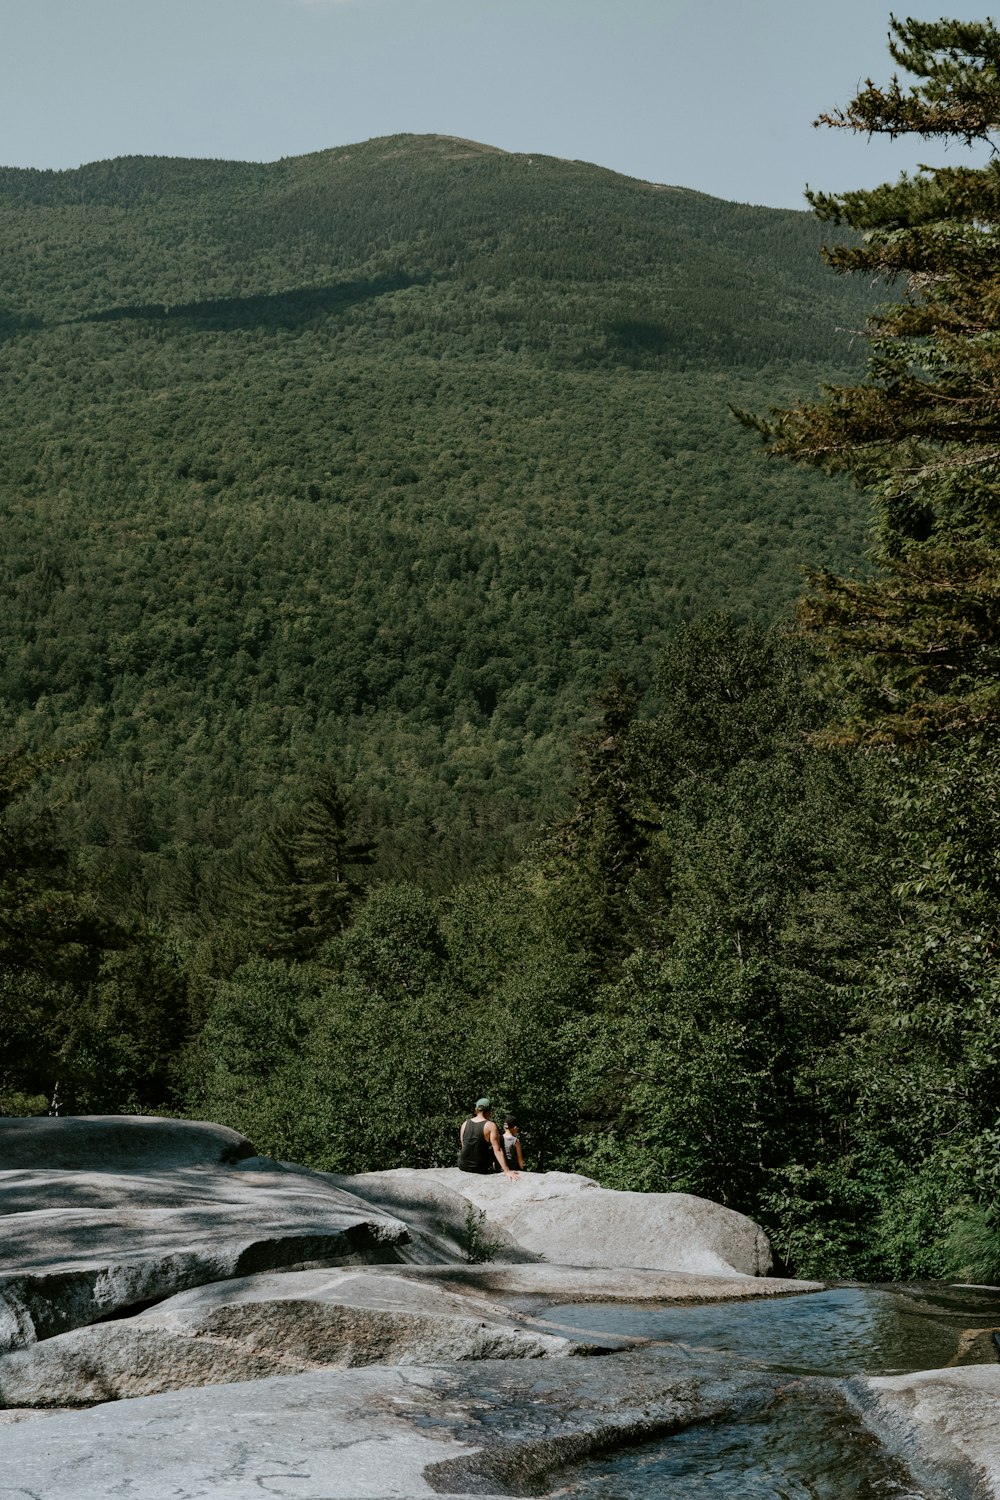 昼間、緑の木々を見下ろす山の崖に座っている人